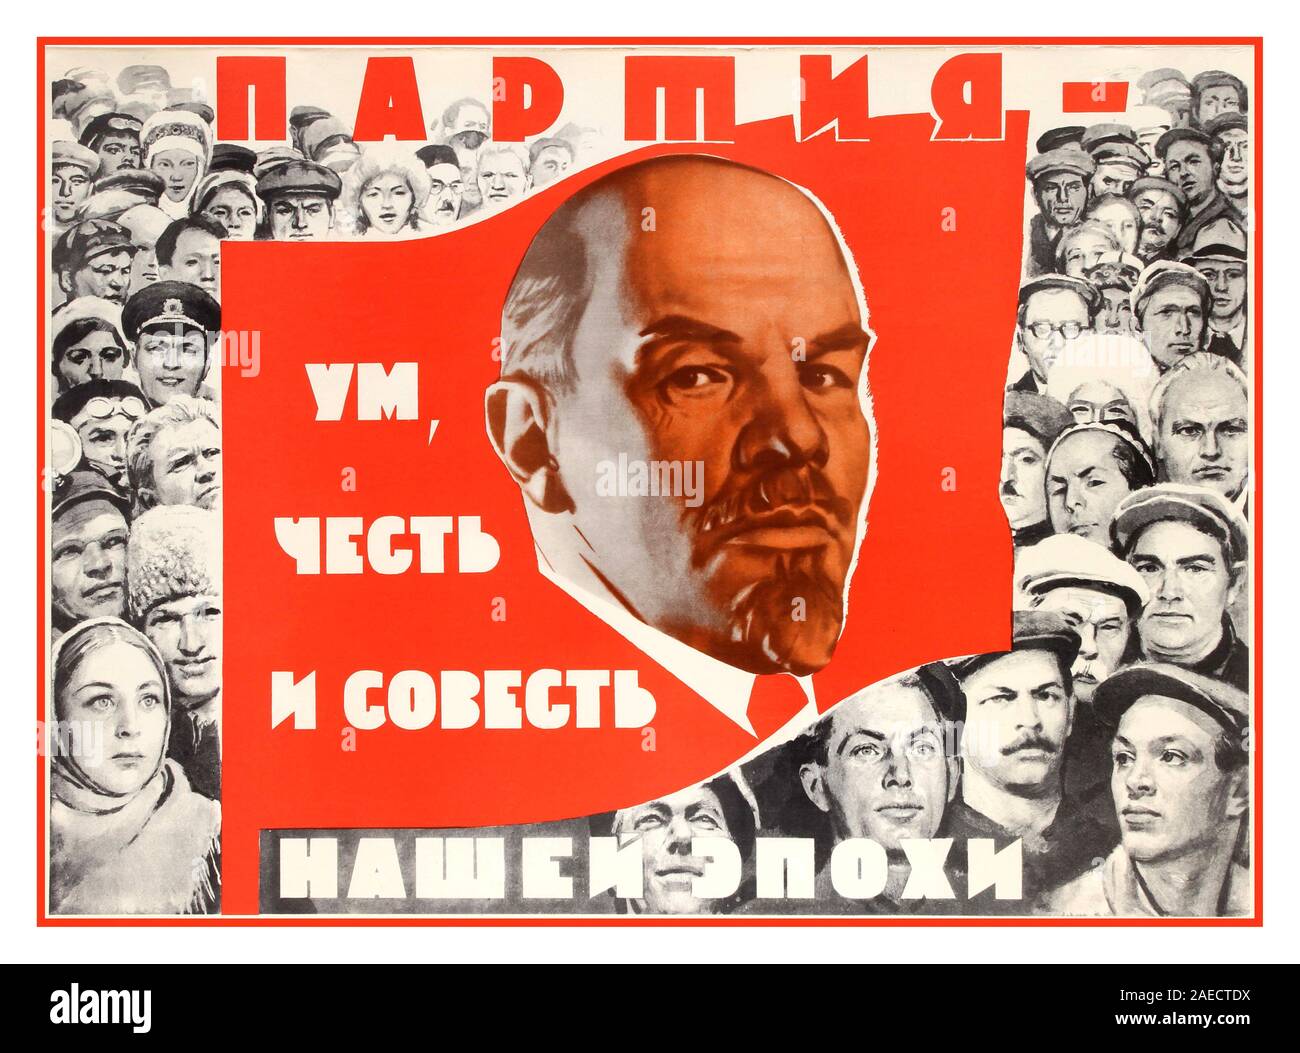 Ufficiale d'epoca sovietica Lenin poster da un funzionario di governo serie di poster migliori. Propaganda sovietica poster di Lenin Il Partito è la mente, l'onore e la coscienza della nostra epoca! Illustrazione che mostra un ritratto di Lenin su una bandiera rossa galleggiante sopra una folla di dimostranti. La Russia, 1969, Isaac Grinstein , Foto Stock